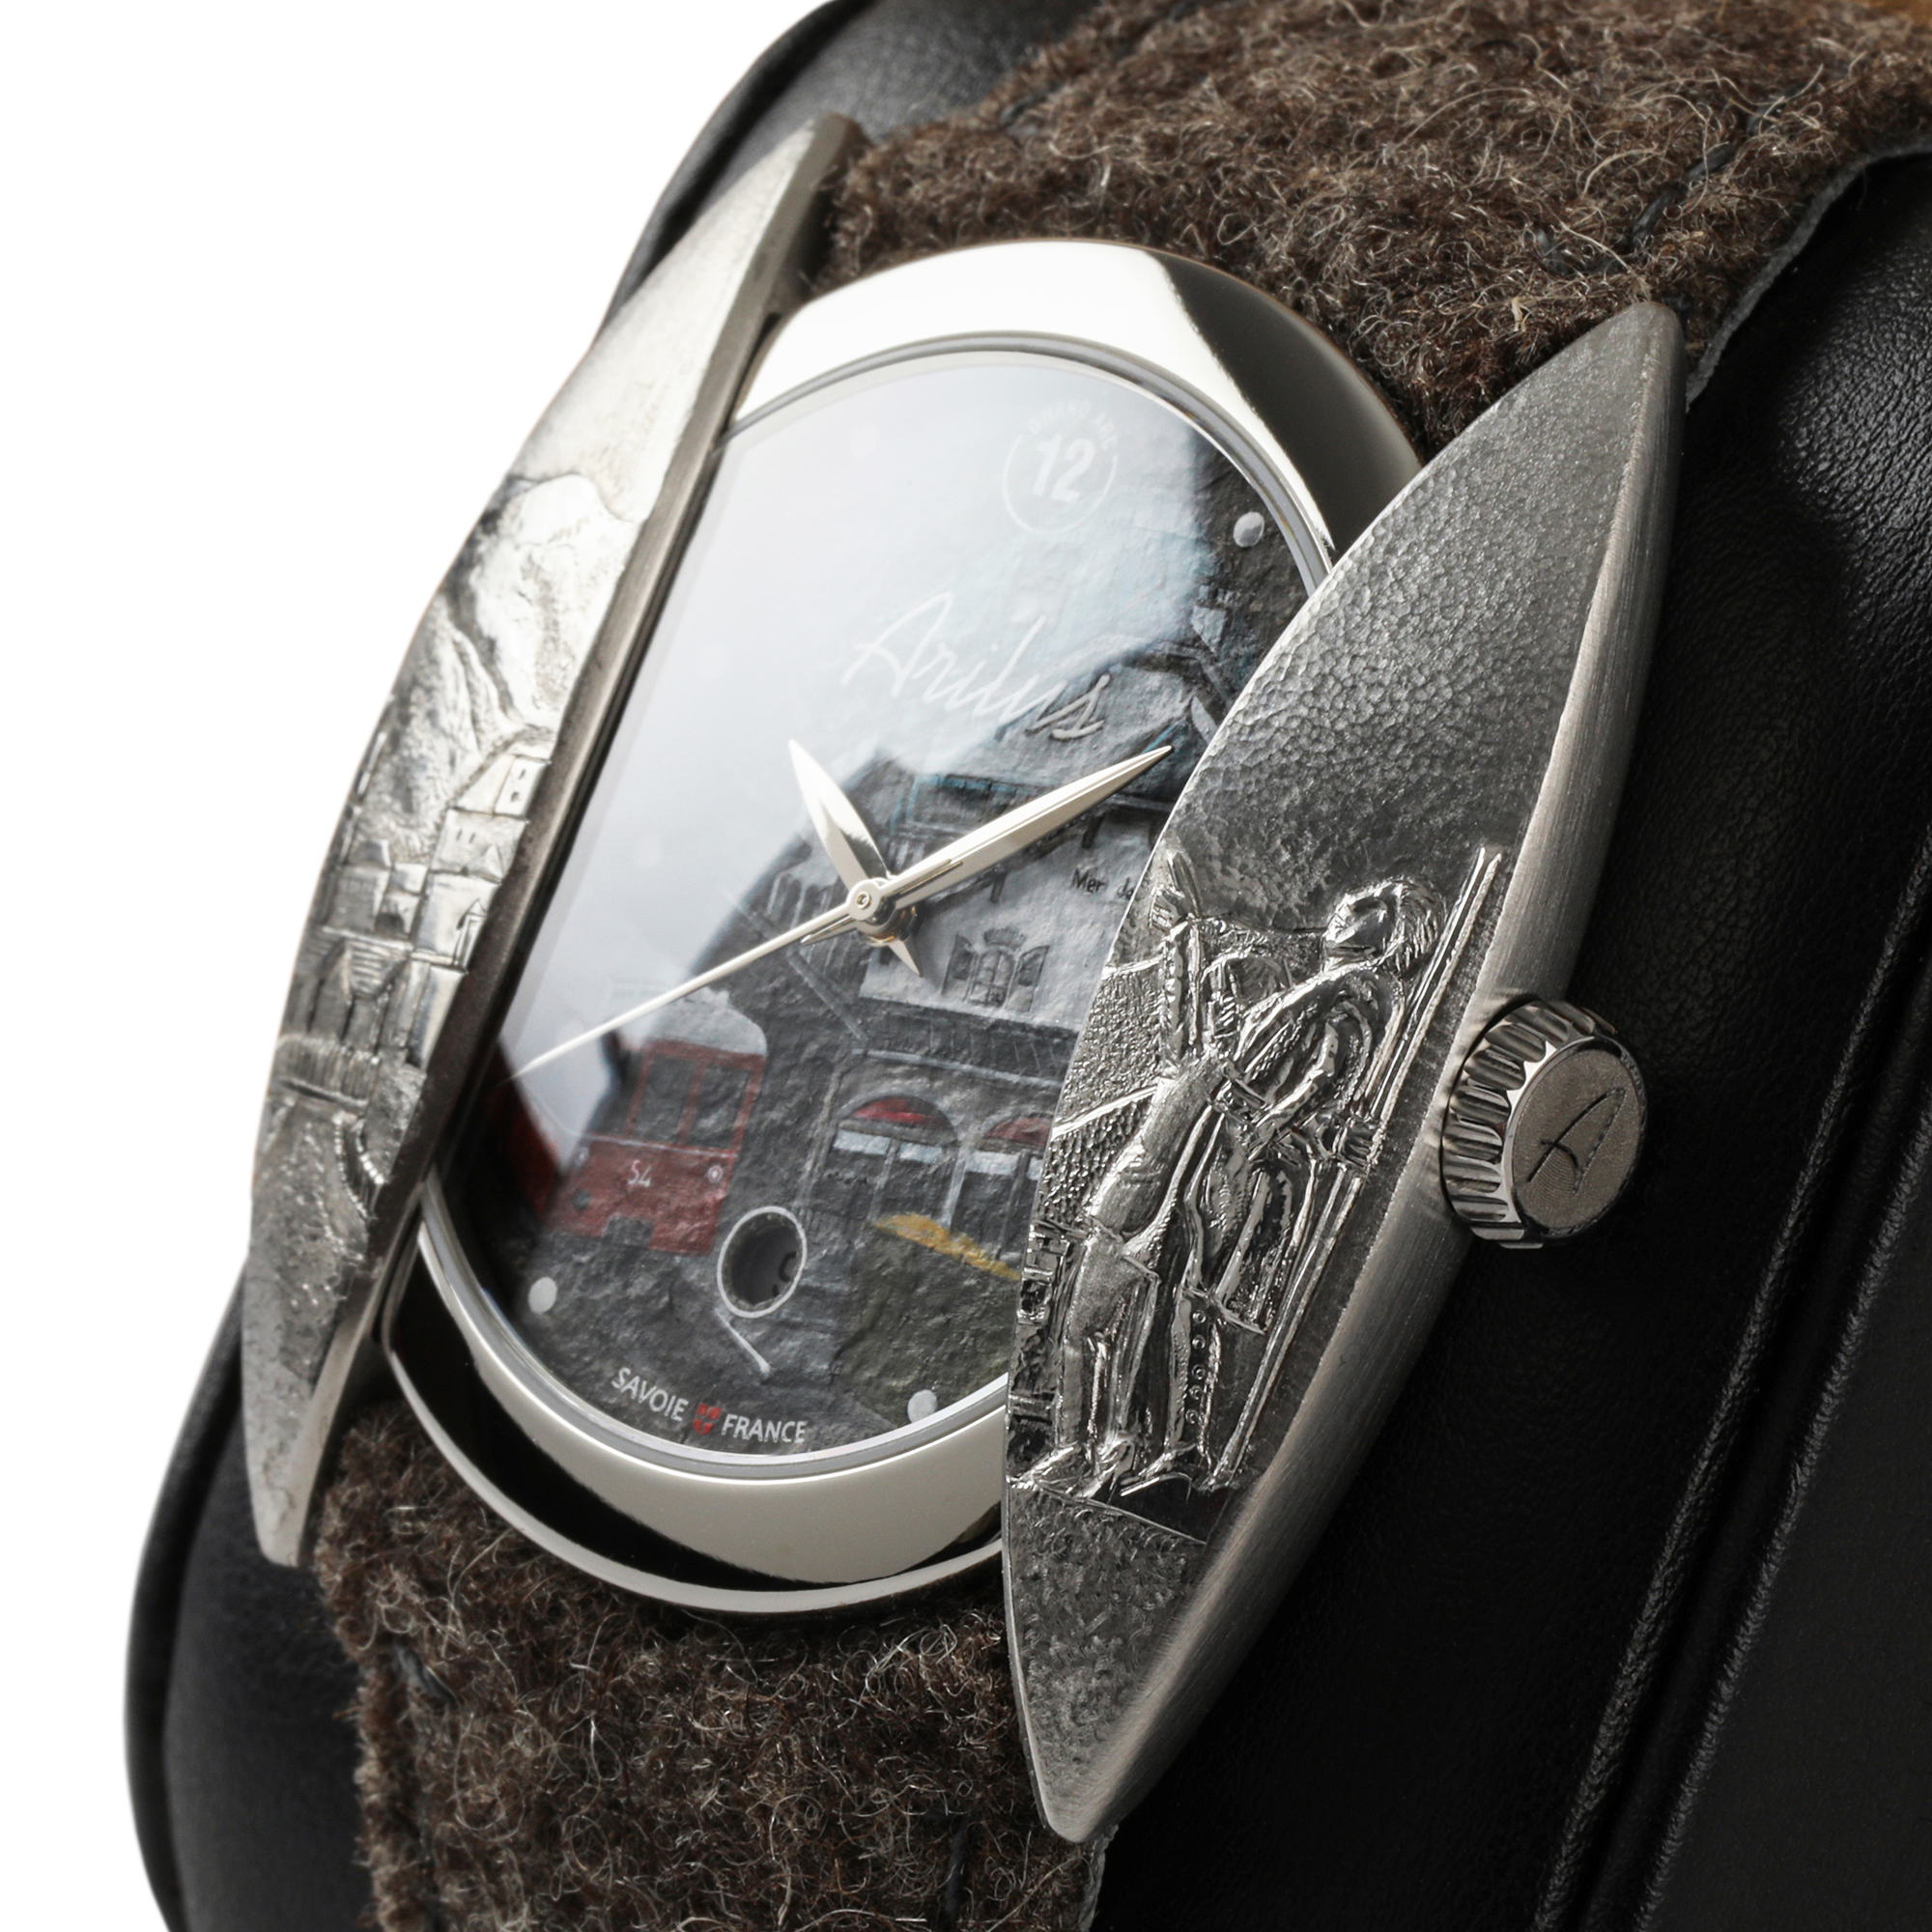 Montre Arilus Grand Arc Chamonix carre 03, montre fabriquée en france, montre made in france, montre fabriquée en Savoie, montres à la française